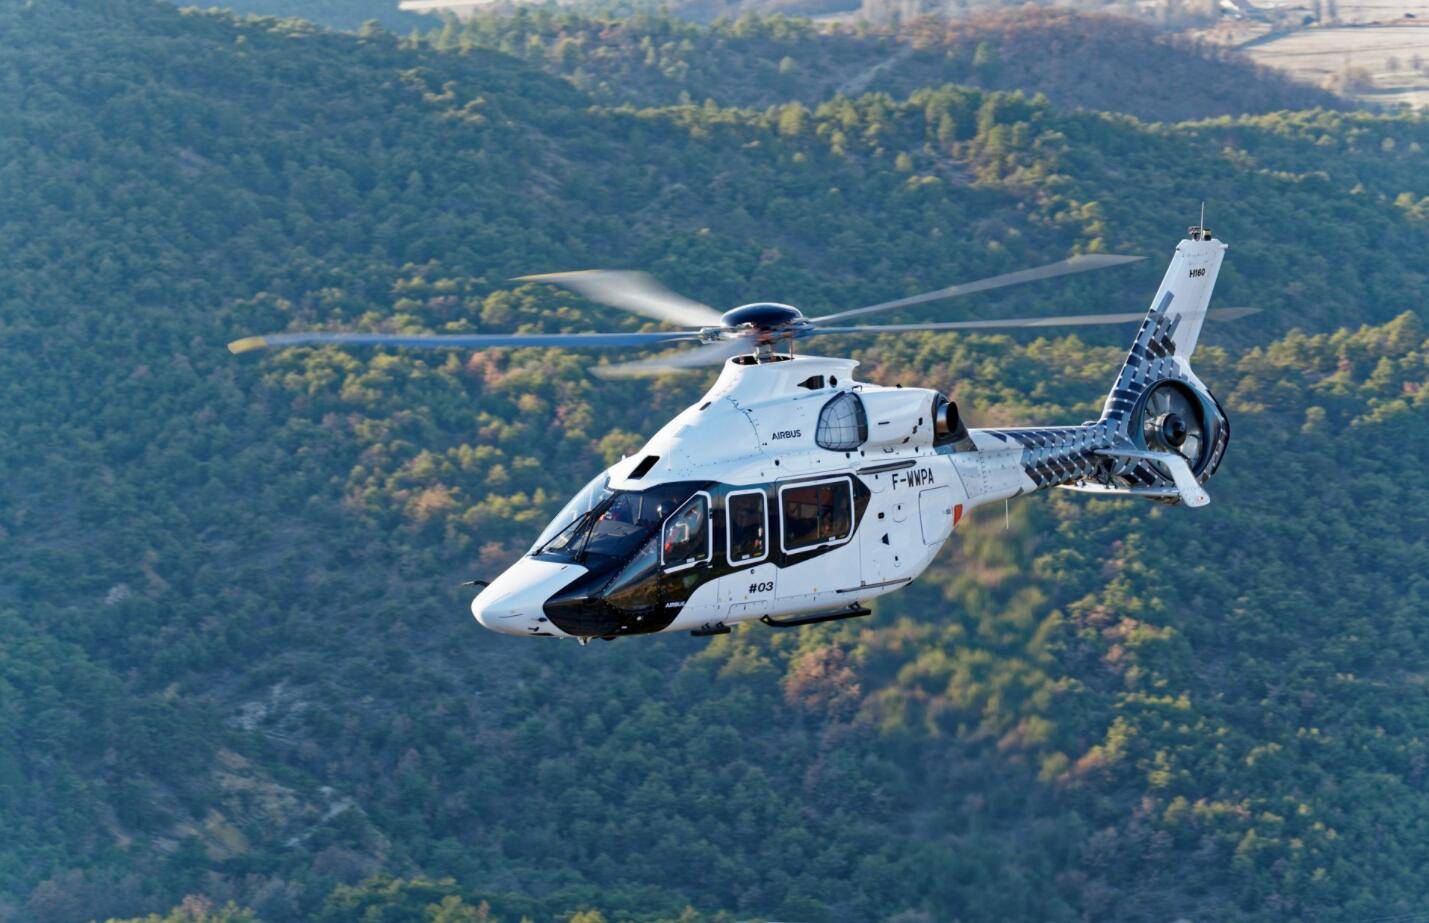 s76和h160直升机都是为私人飞机而设计但速度航程有差距